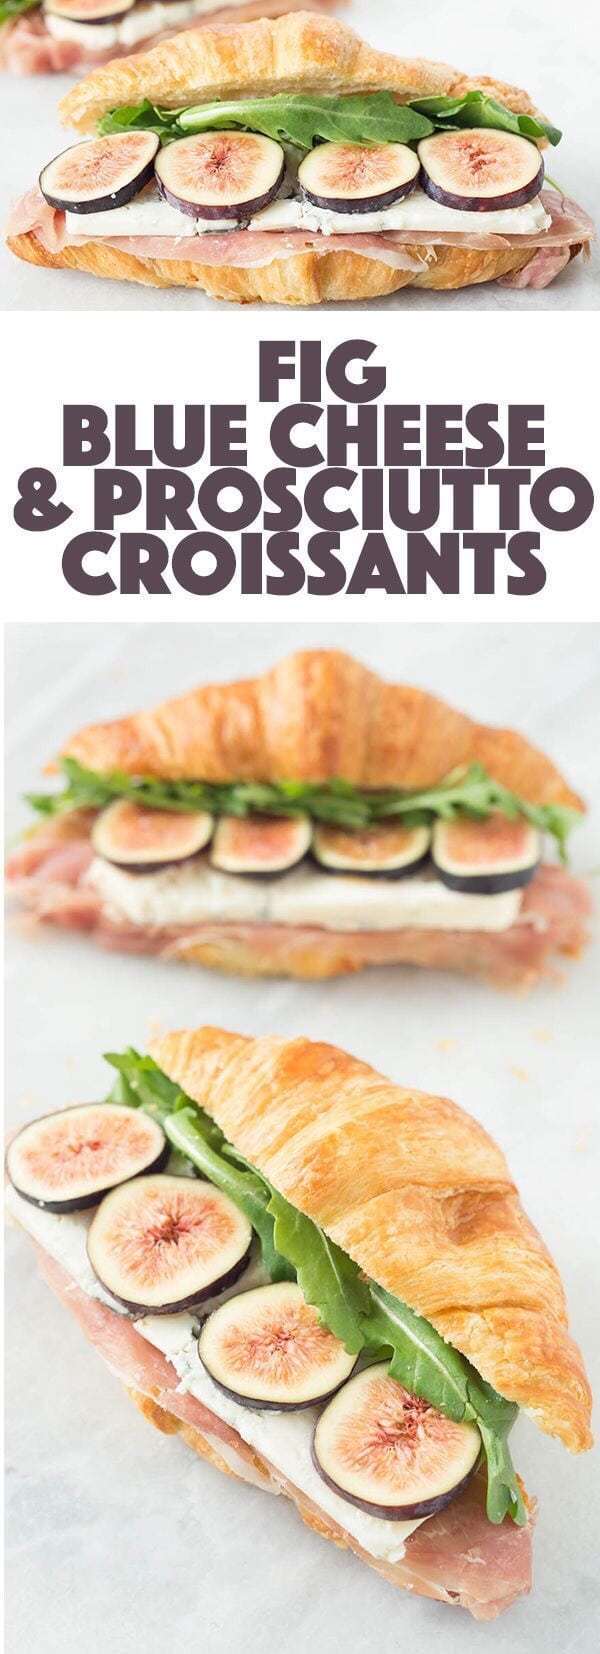 Best Croissant Sandwich Recipes (Part 1) - Sandwich Recipes, Easy Sandwich Recipes, Croissant Sandwich Recipes, Croissant